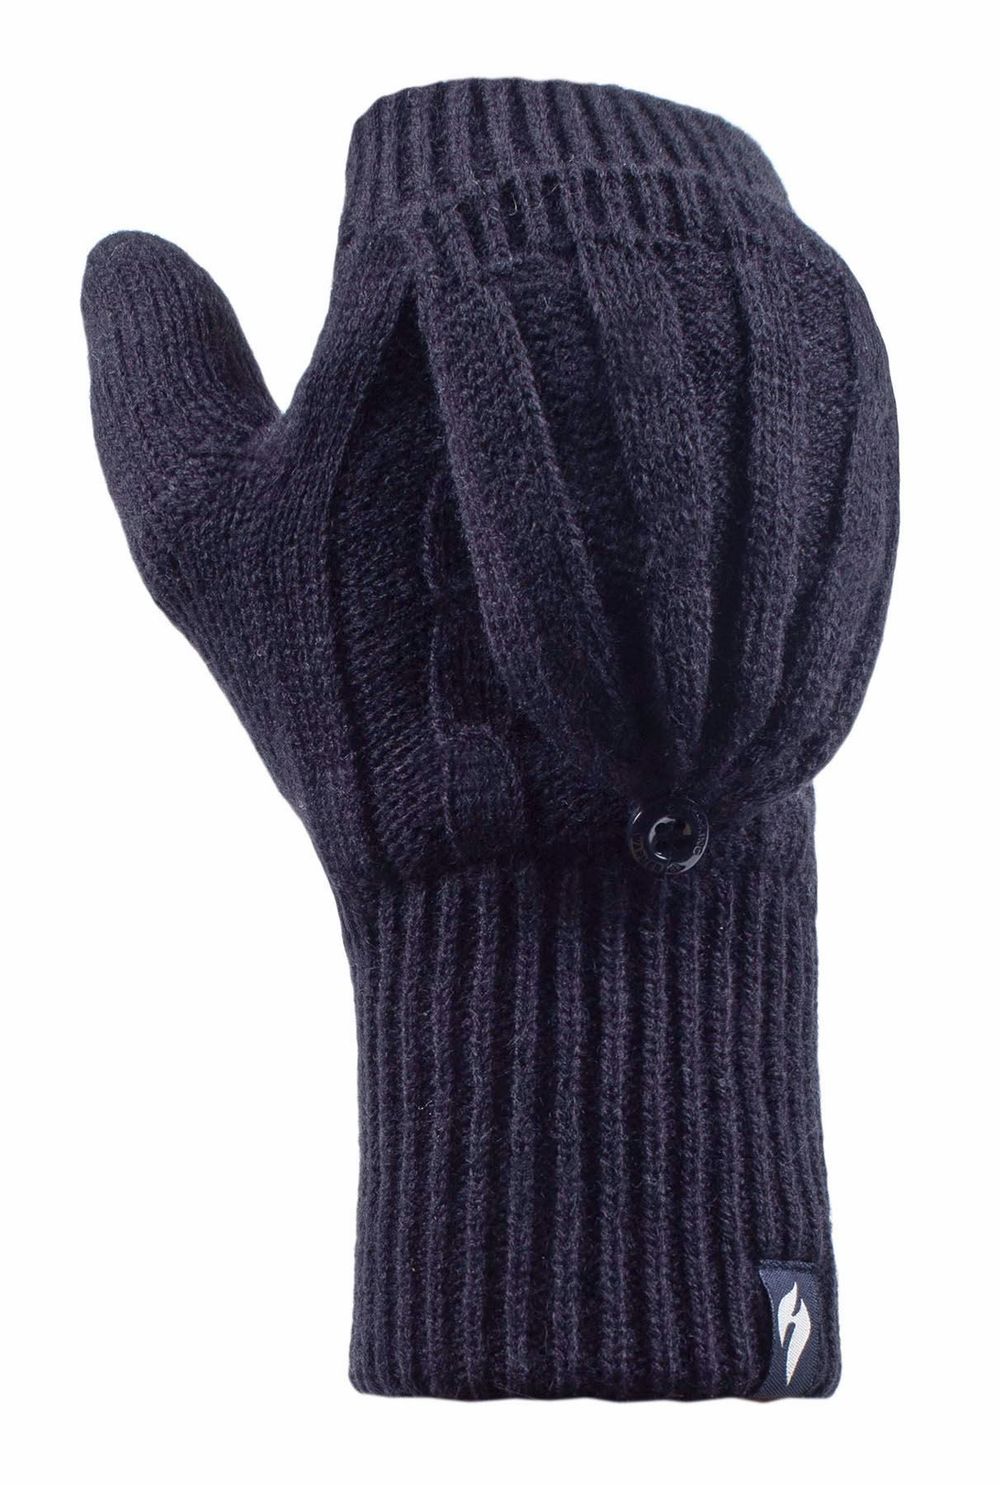 Heat Holders - Ladies Converter Gloves